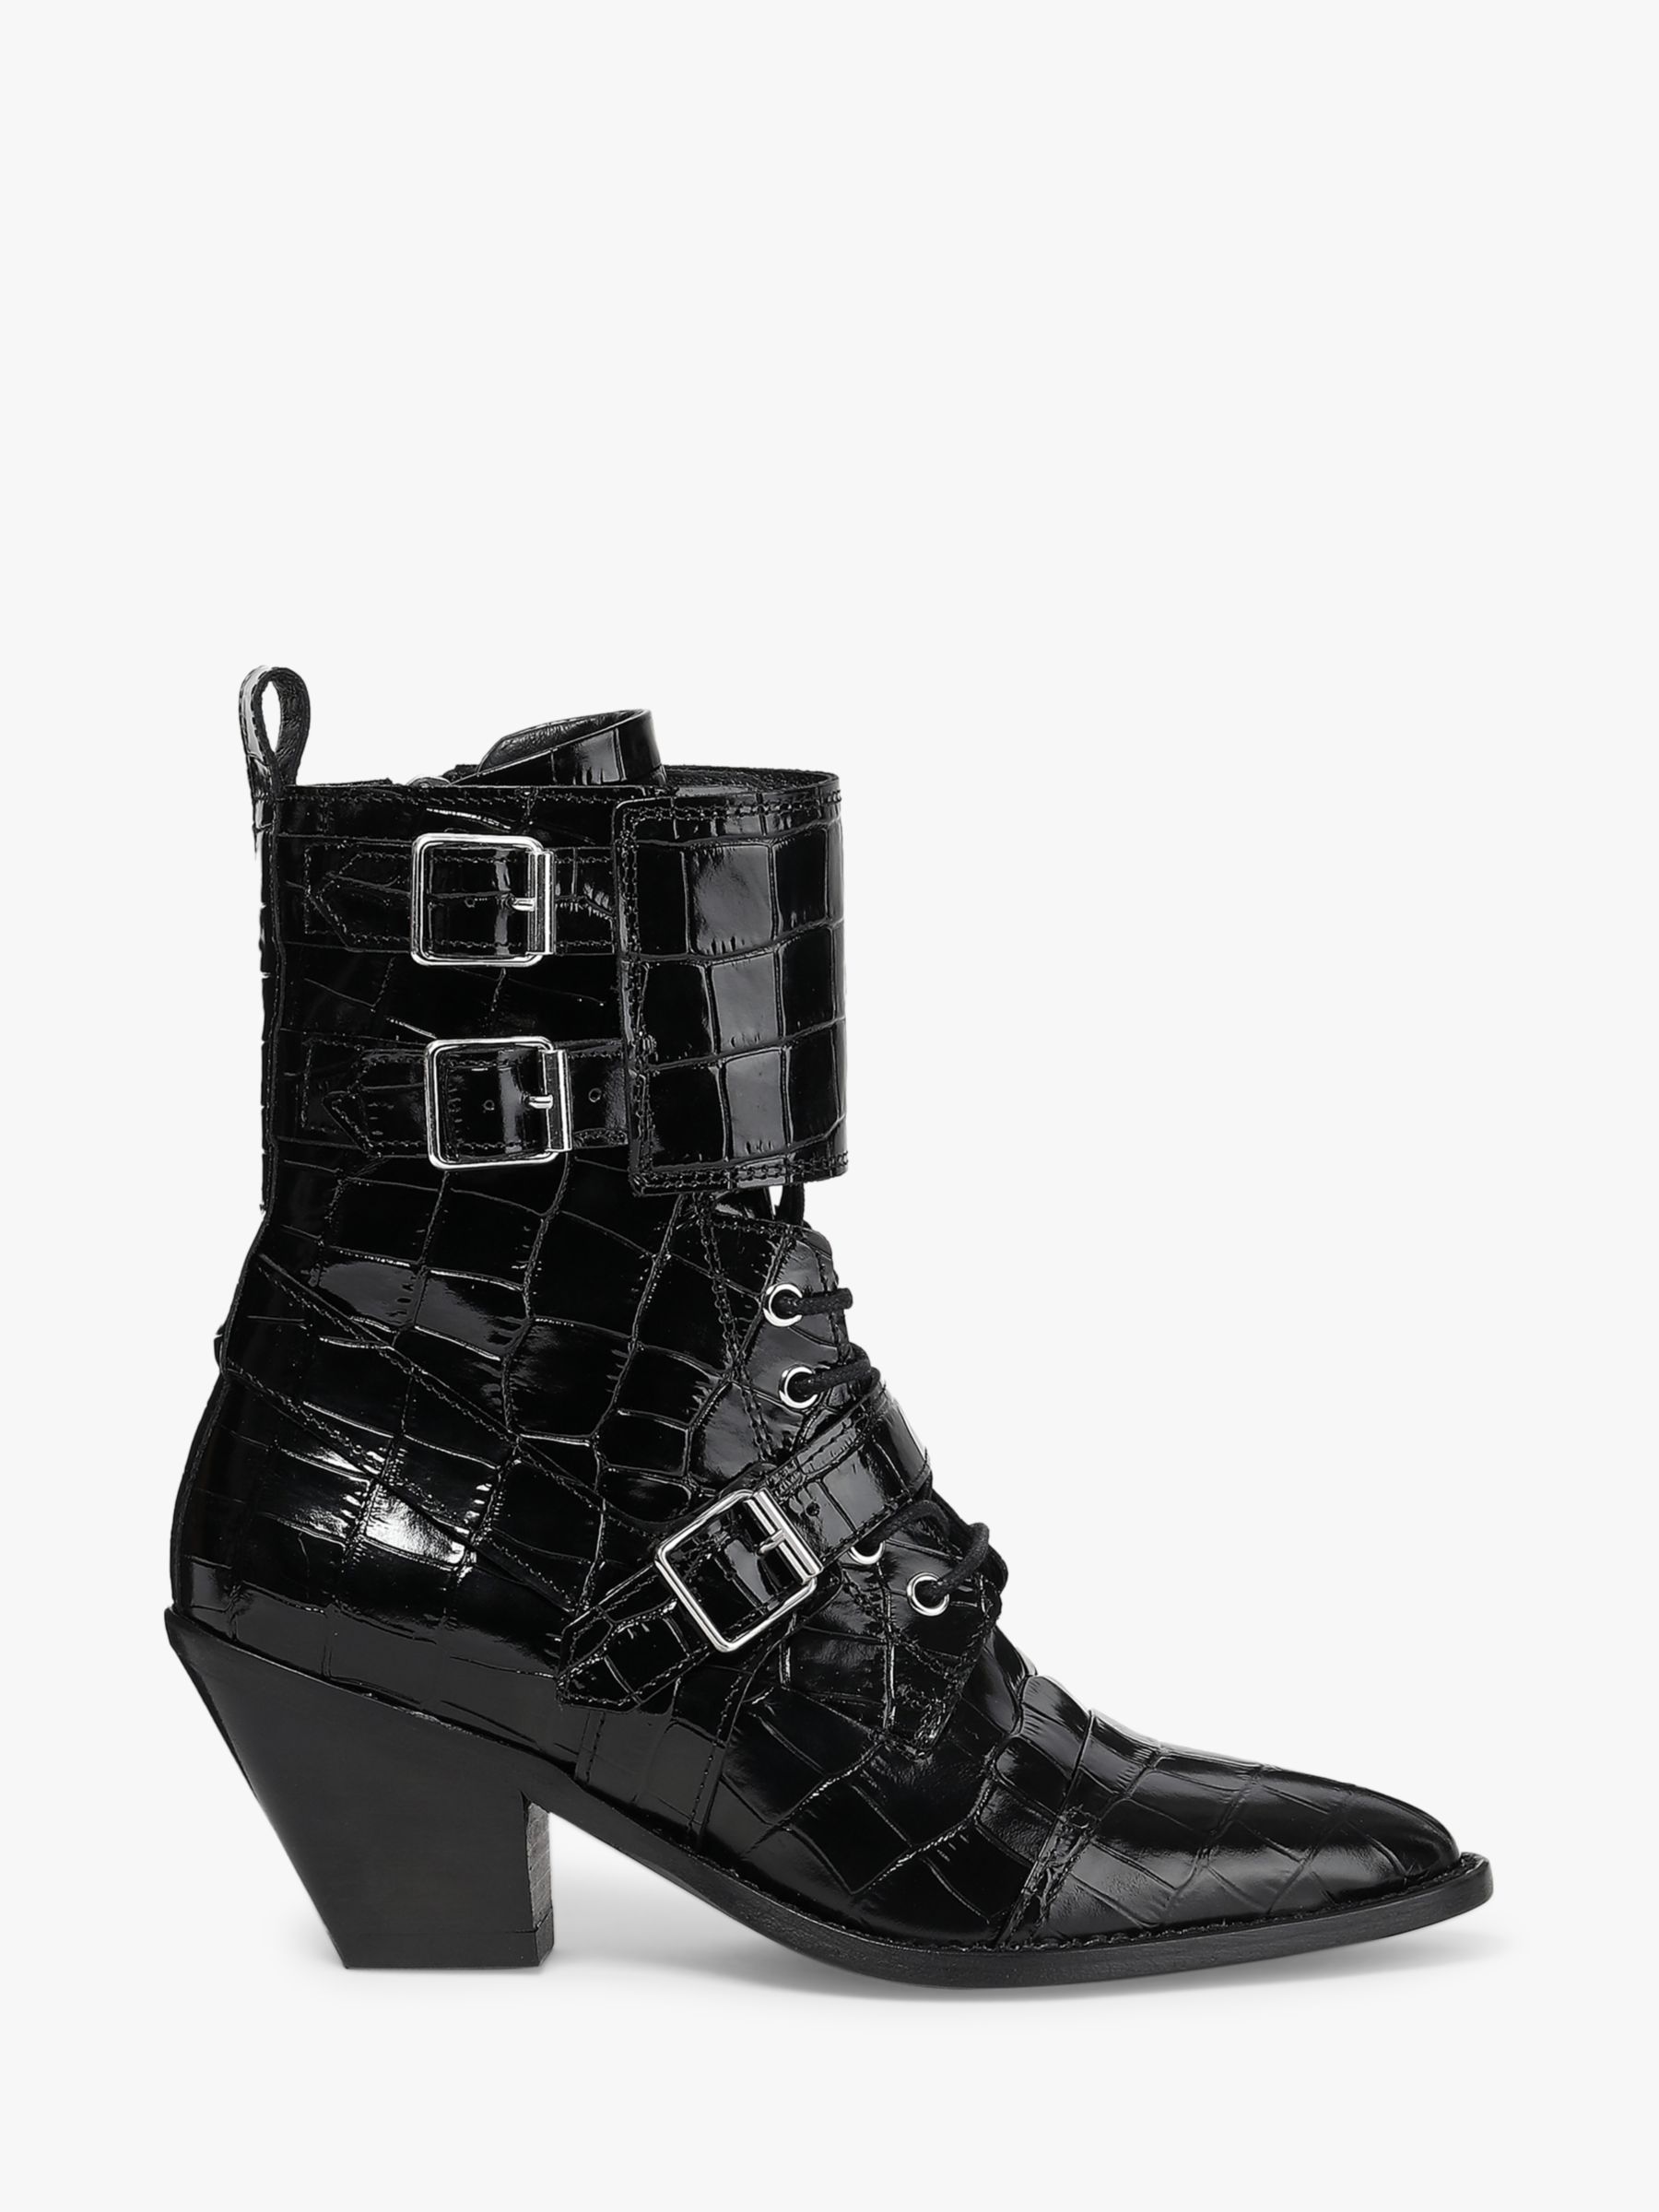 AllSaints Alix Leather Lace Up Ankle Boots, Black